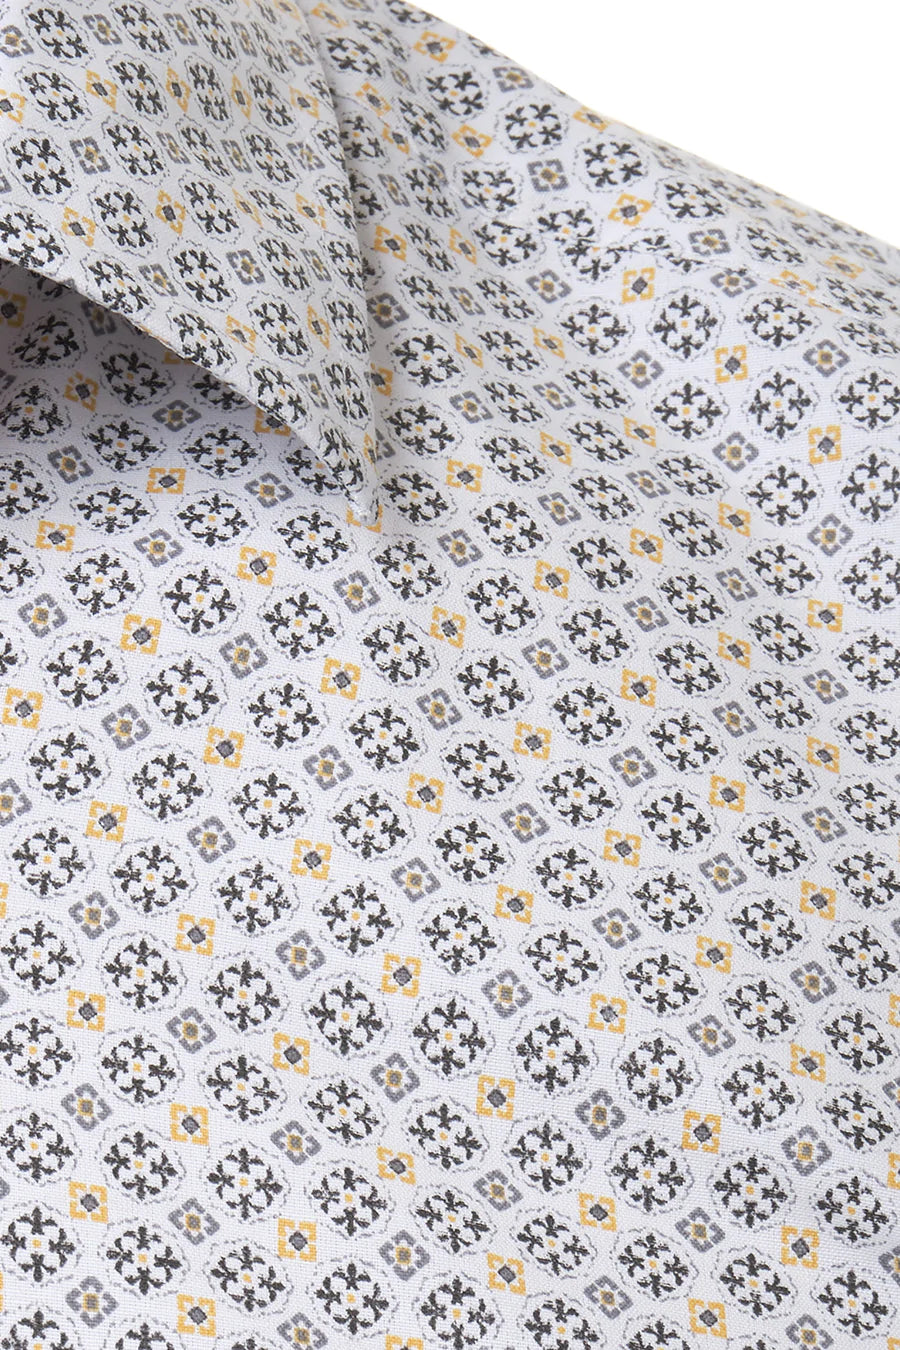 Ανδρικό πουκάμισο Arturo, Λευκό/Κίτρινο 2